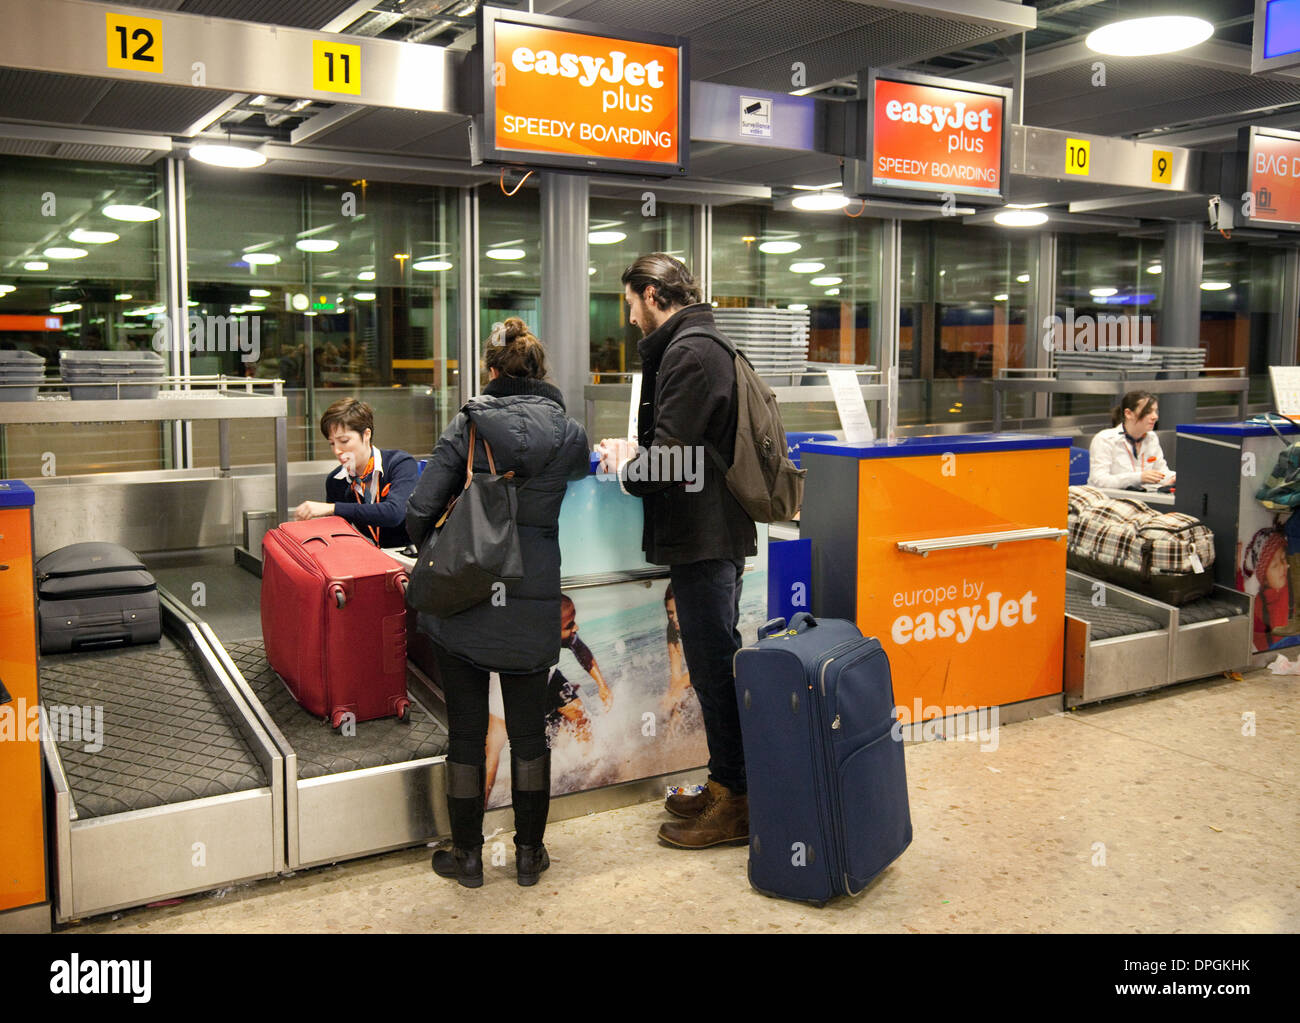 Speedy boarding Easyjet bagages dans l'aéroport de Genève, Suisse Europe Banque D'Images